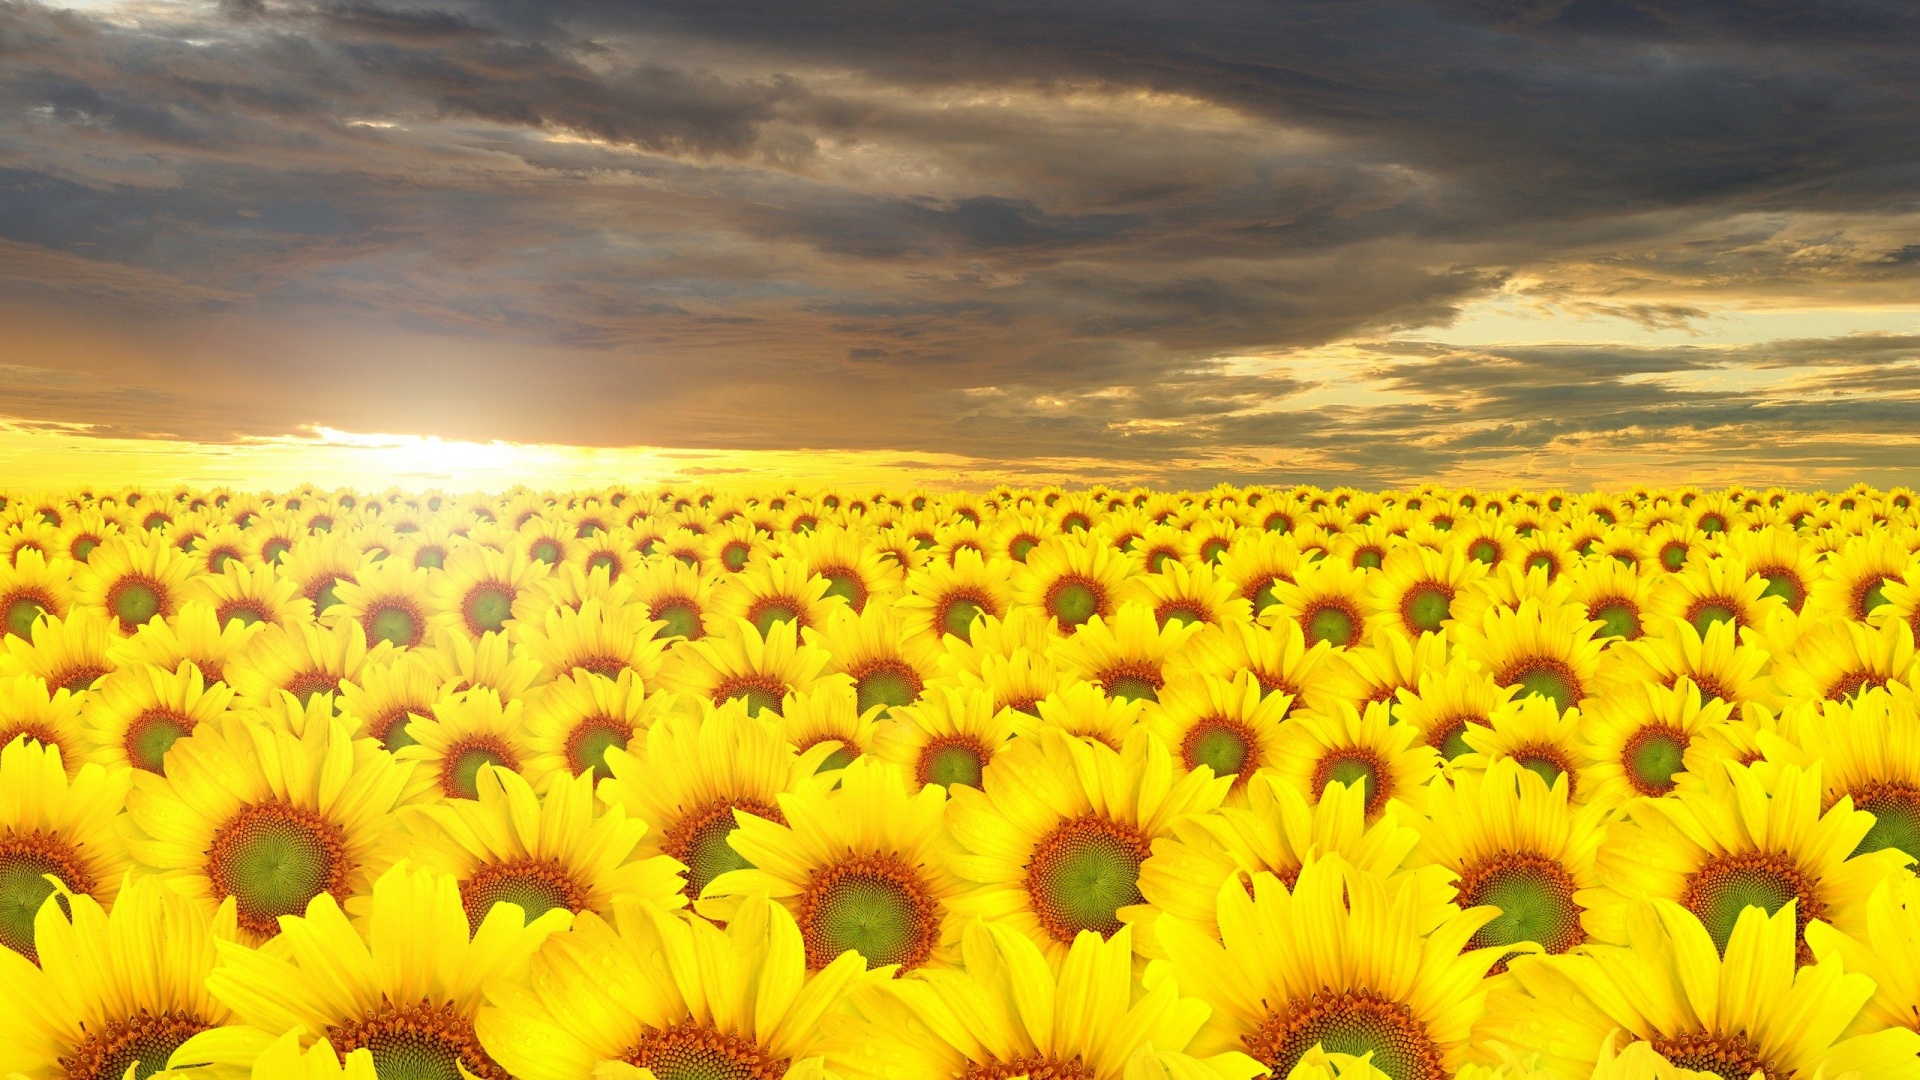 Sunflower Field Wallpaper - Sunflower Hd Wallpaper 1080p , HD Wallpaper & Backgrounds